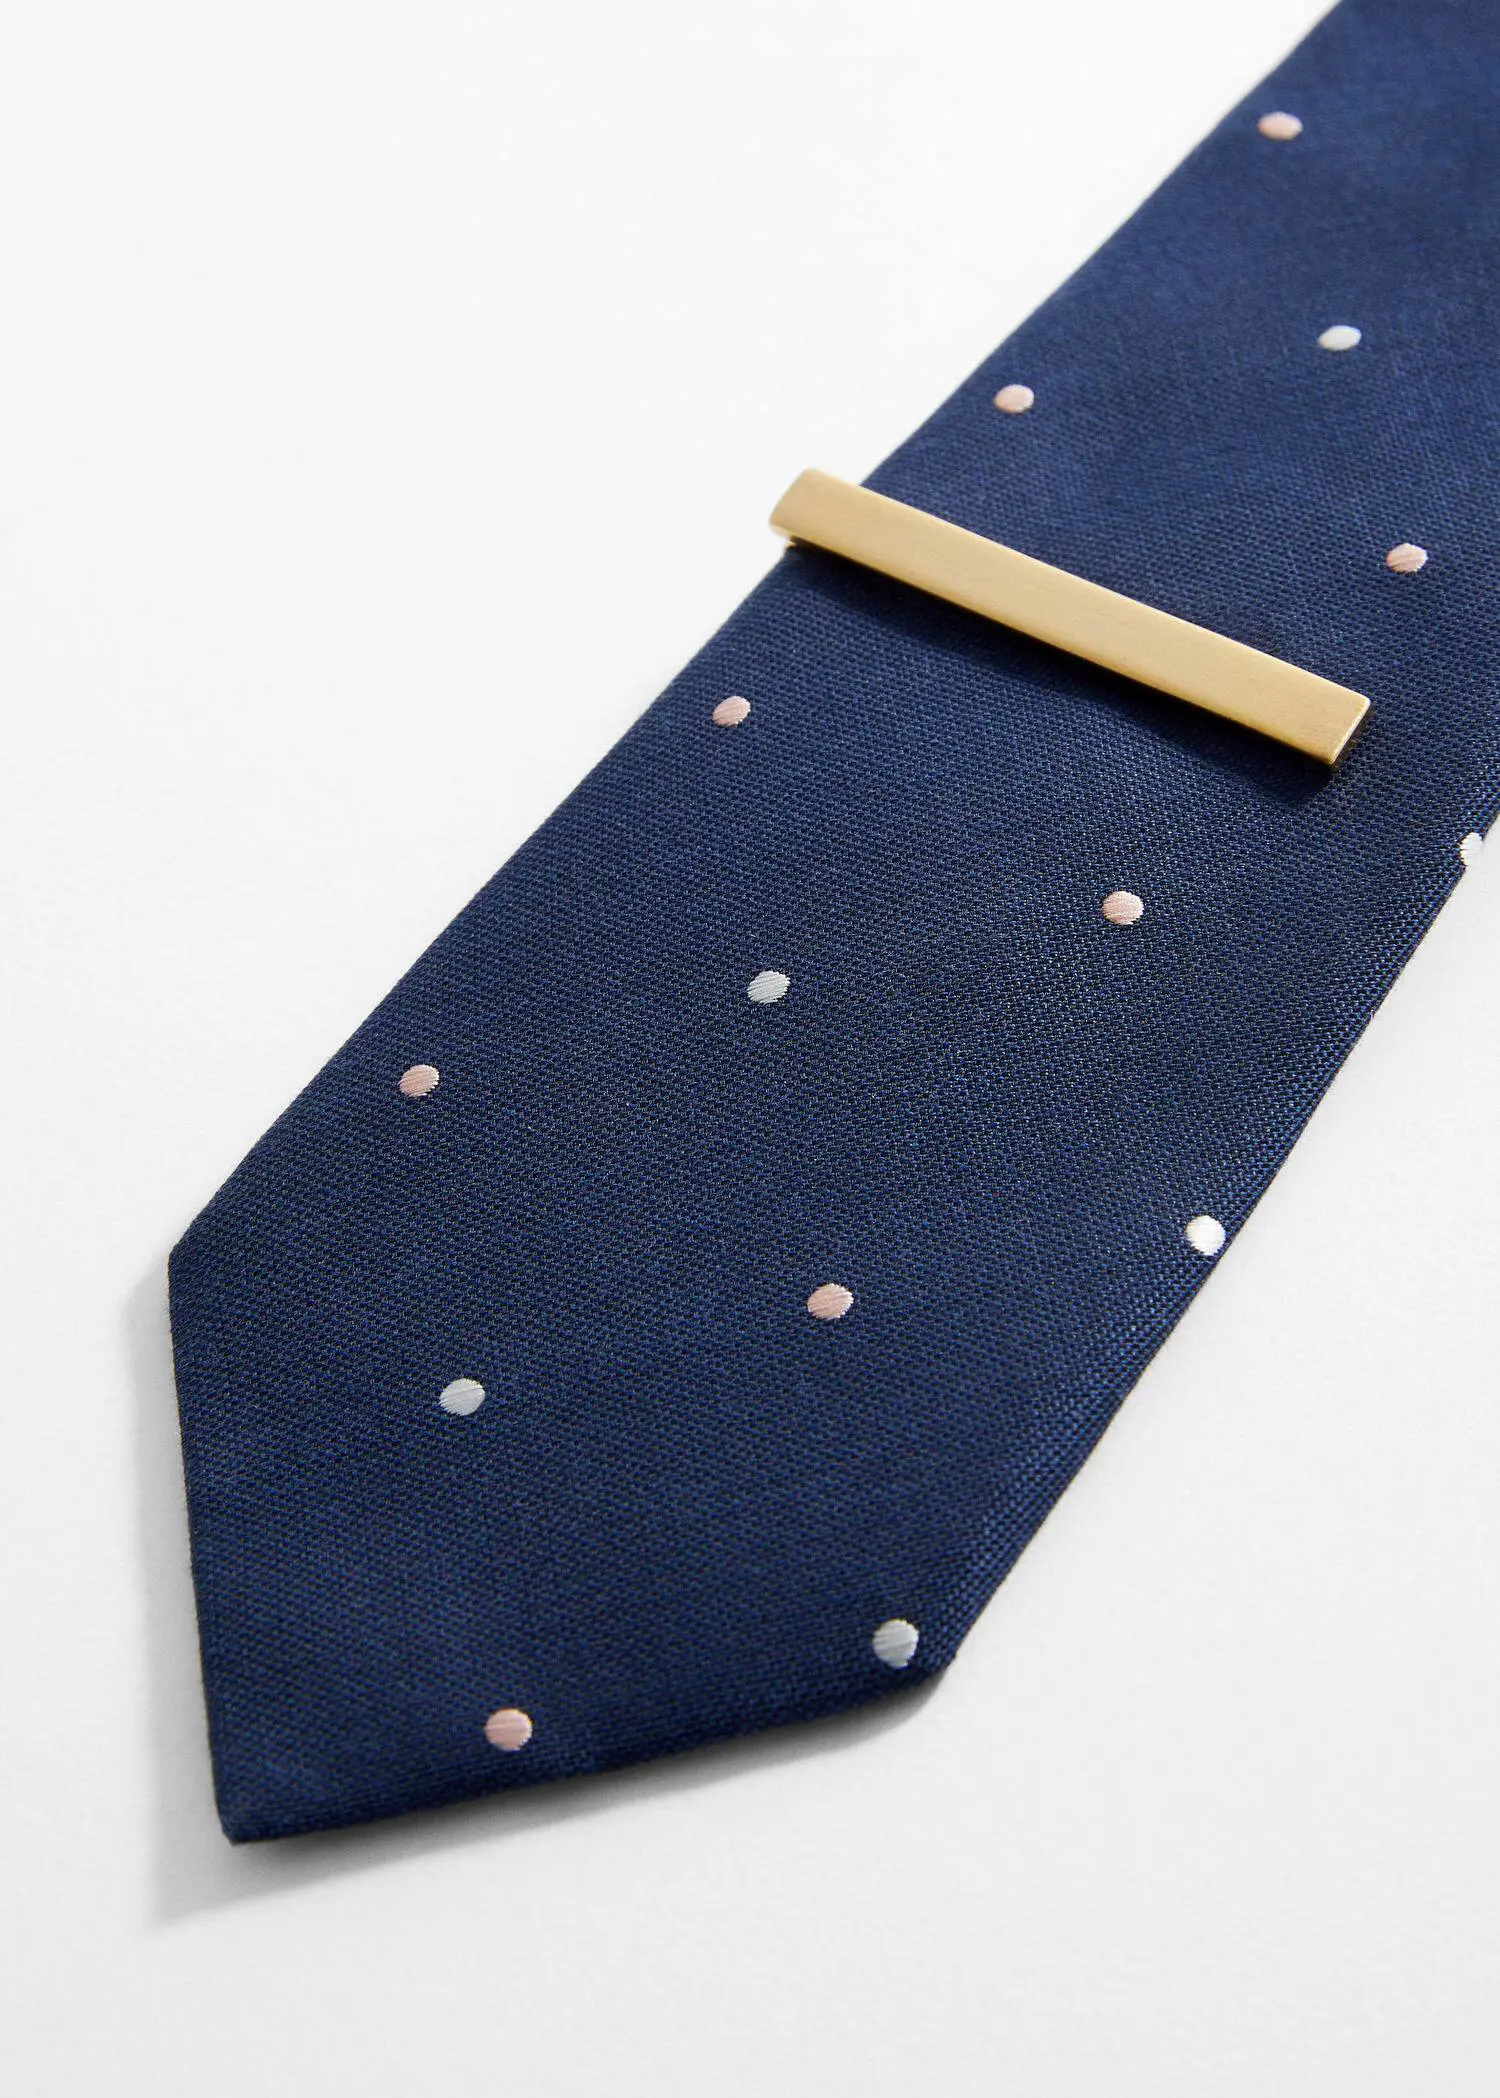 Mango Metal tie clip. a blue tie with a wooden tie clip. 